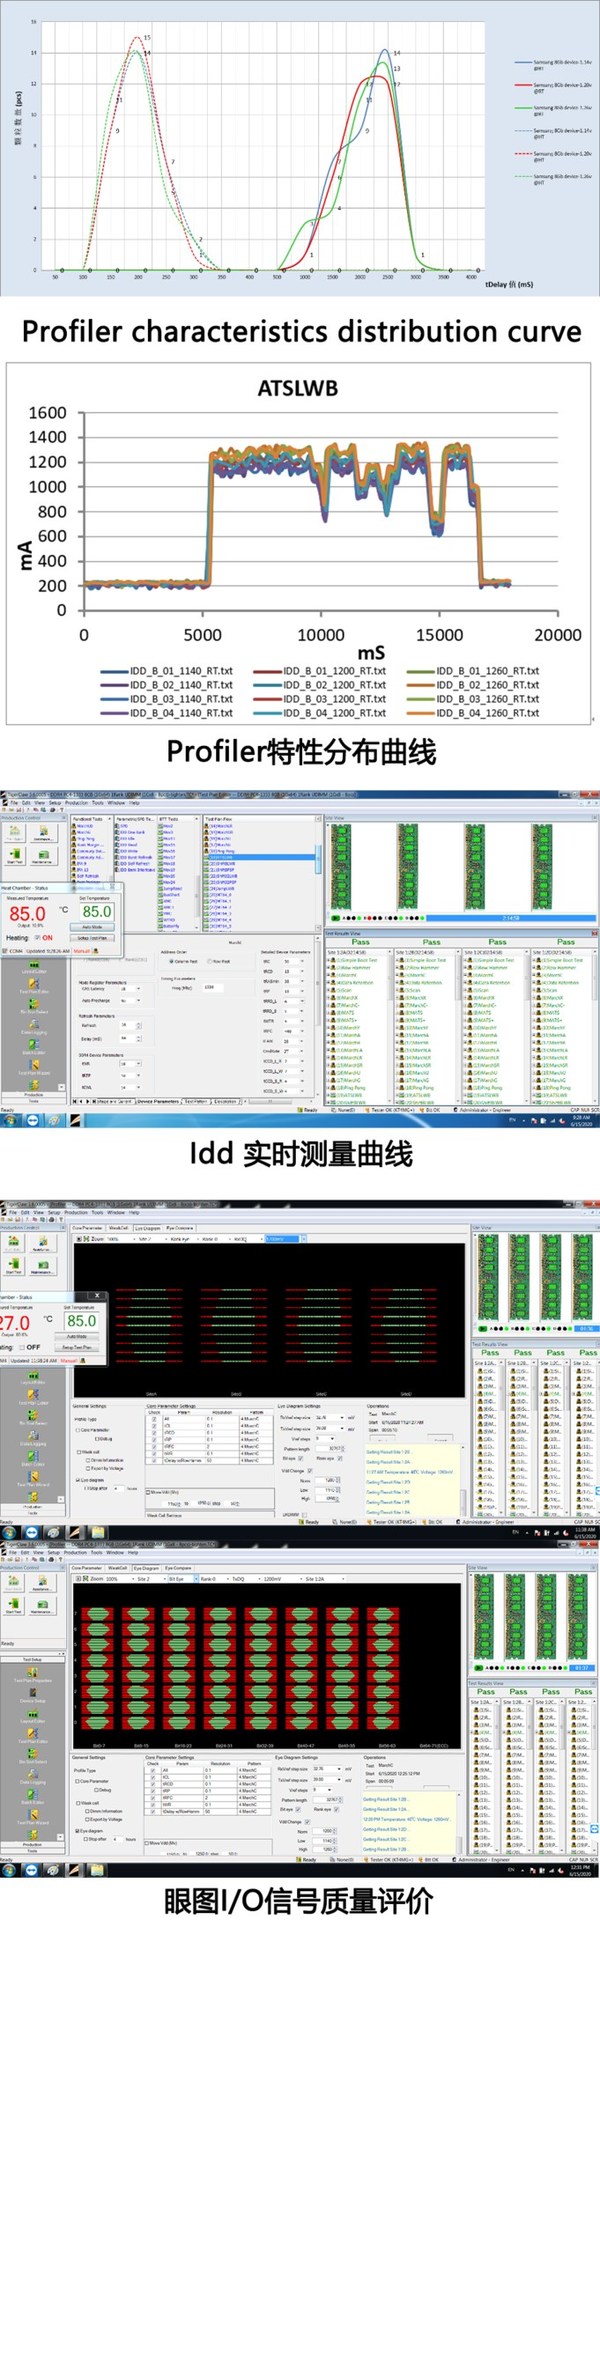 江波龙DDR4内存已通过KTI专项测试认证